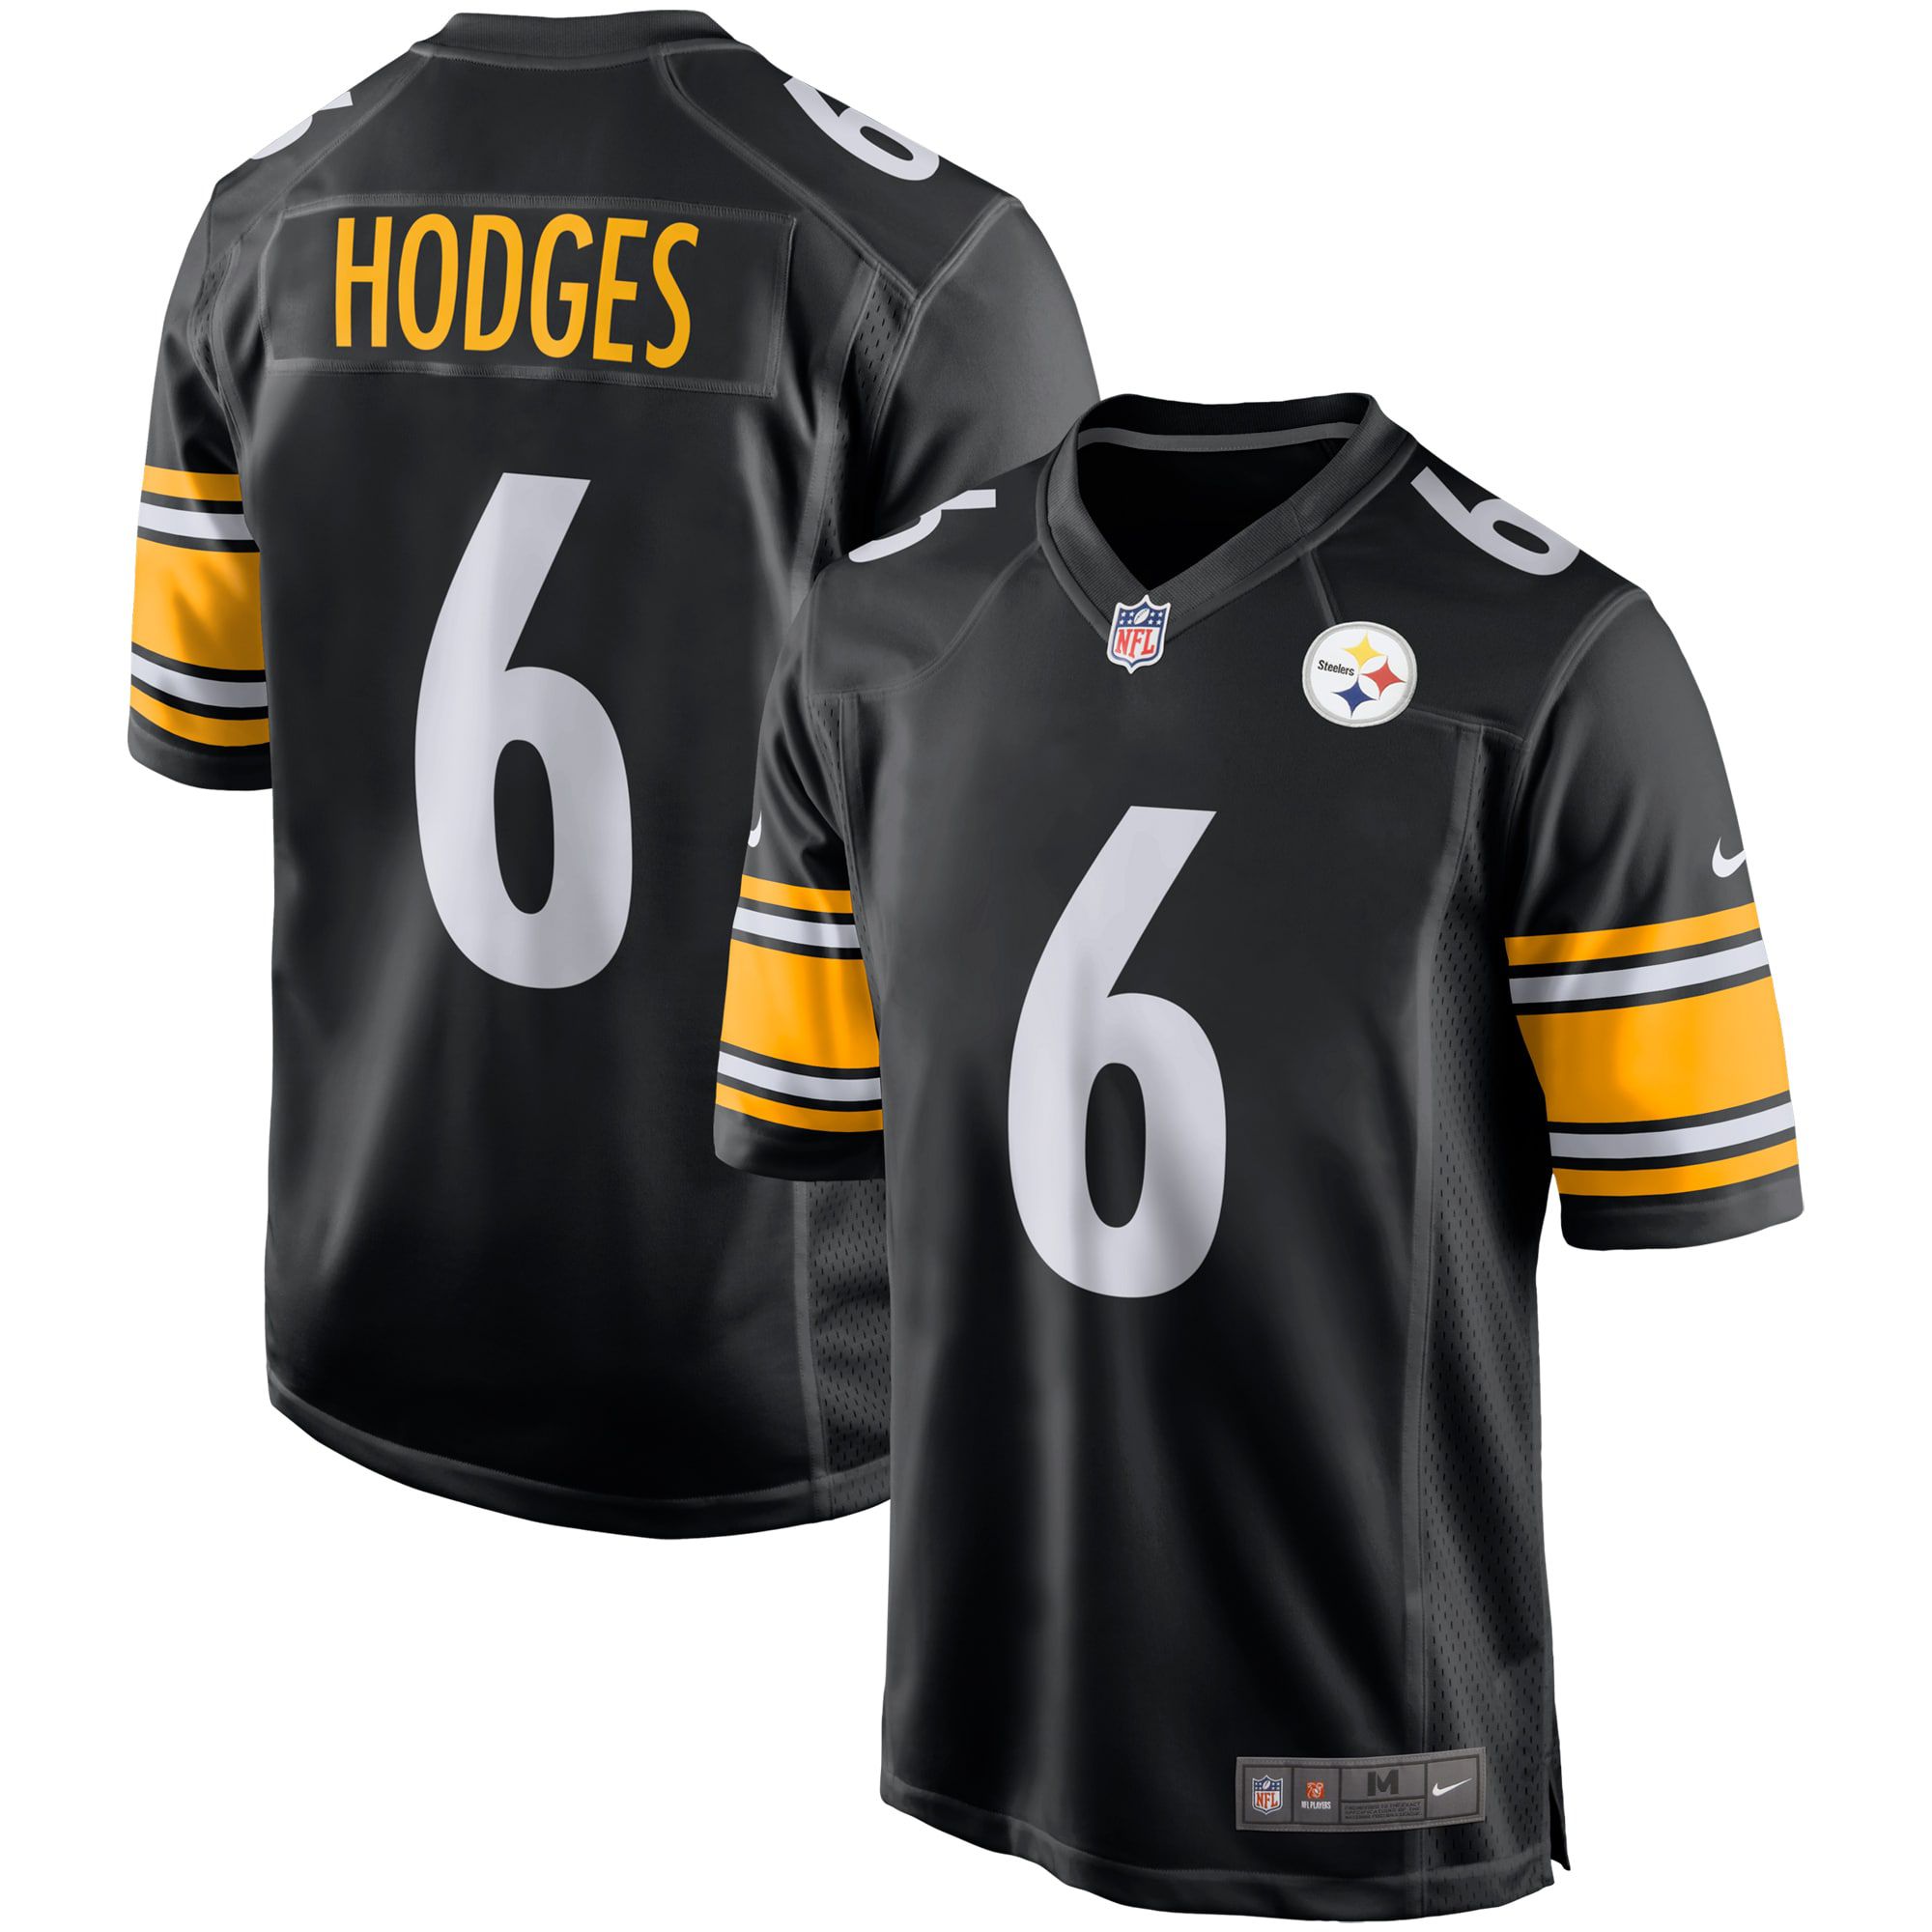 Men Pittsburgh Steelers #6 Devlin Hodges Nike Black Game NFL Jersey->pittsburgh steelers->NFL Jersey